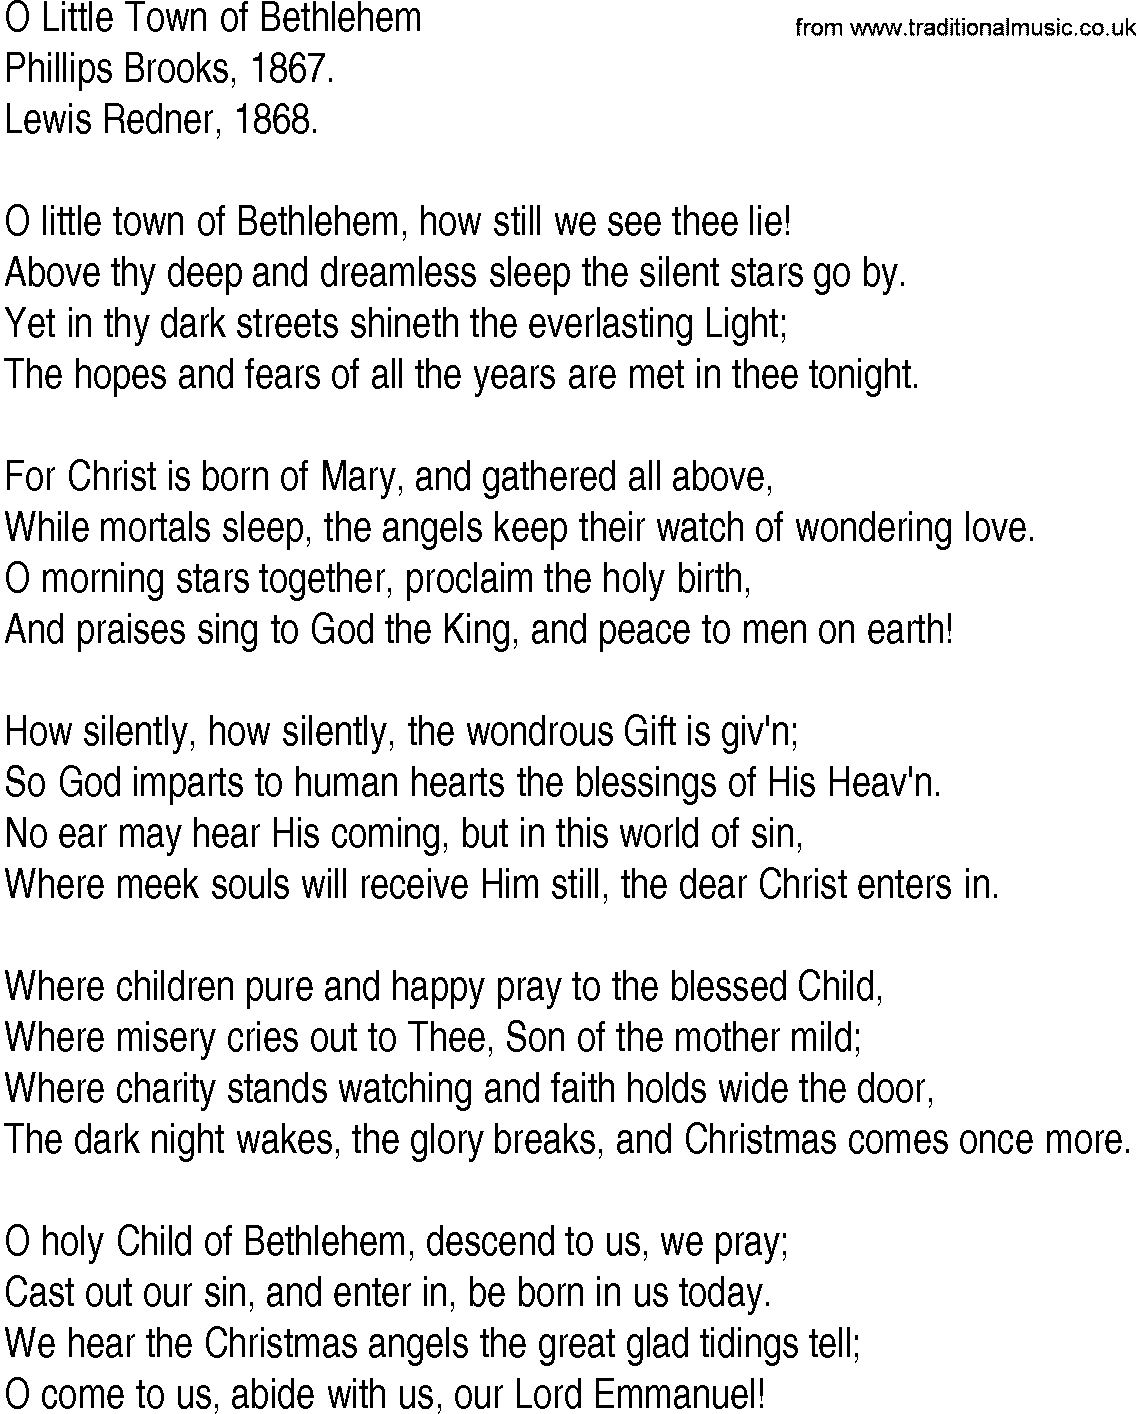 Hymn and Gospel Song: O Little Town of Bethlehem by Phillips Brooks lyrics